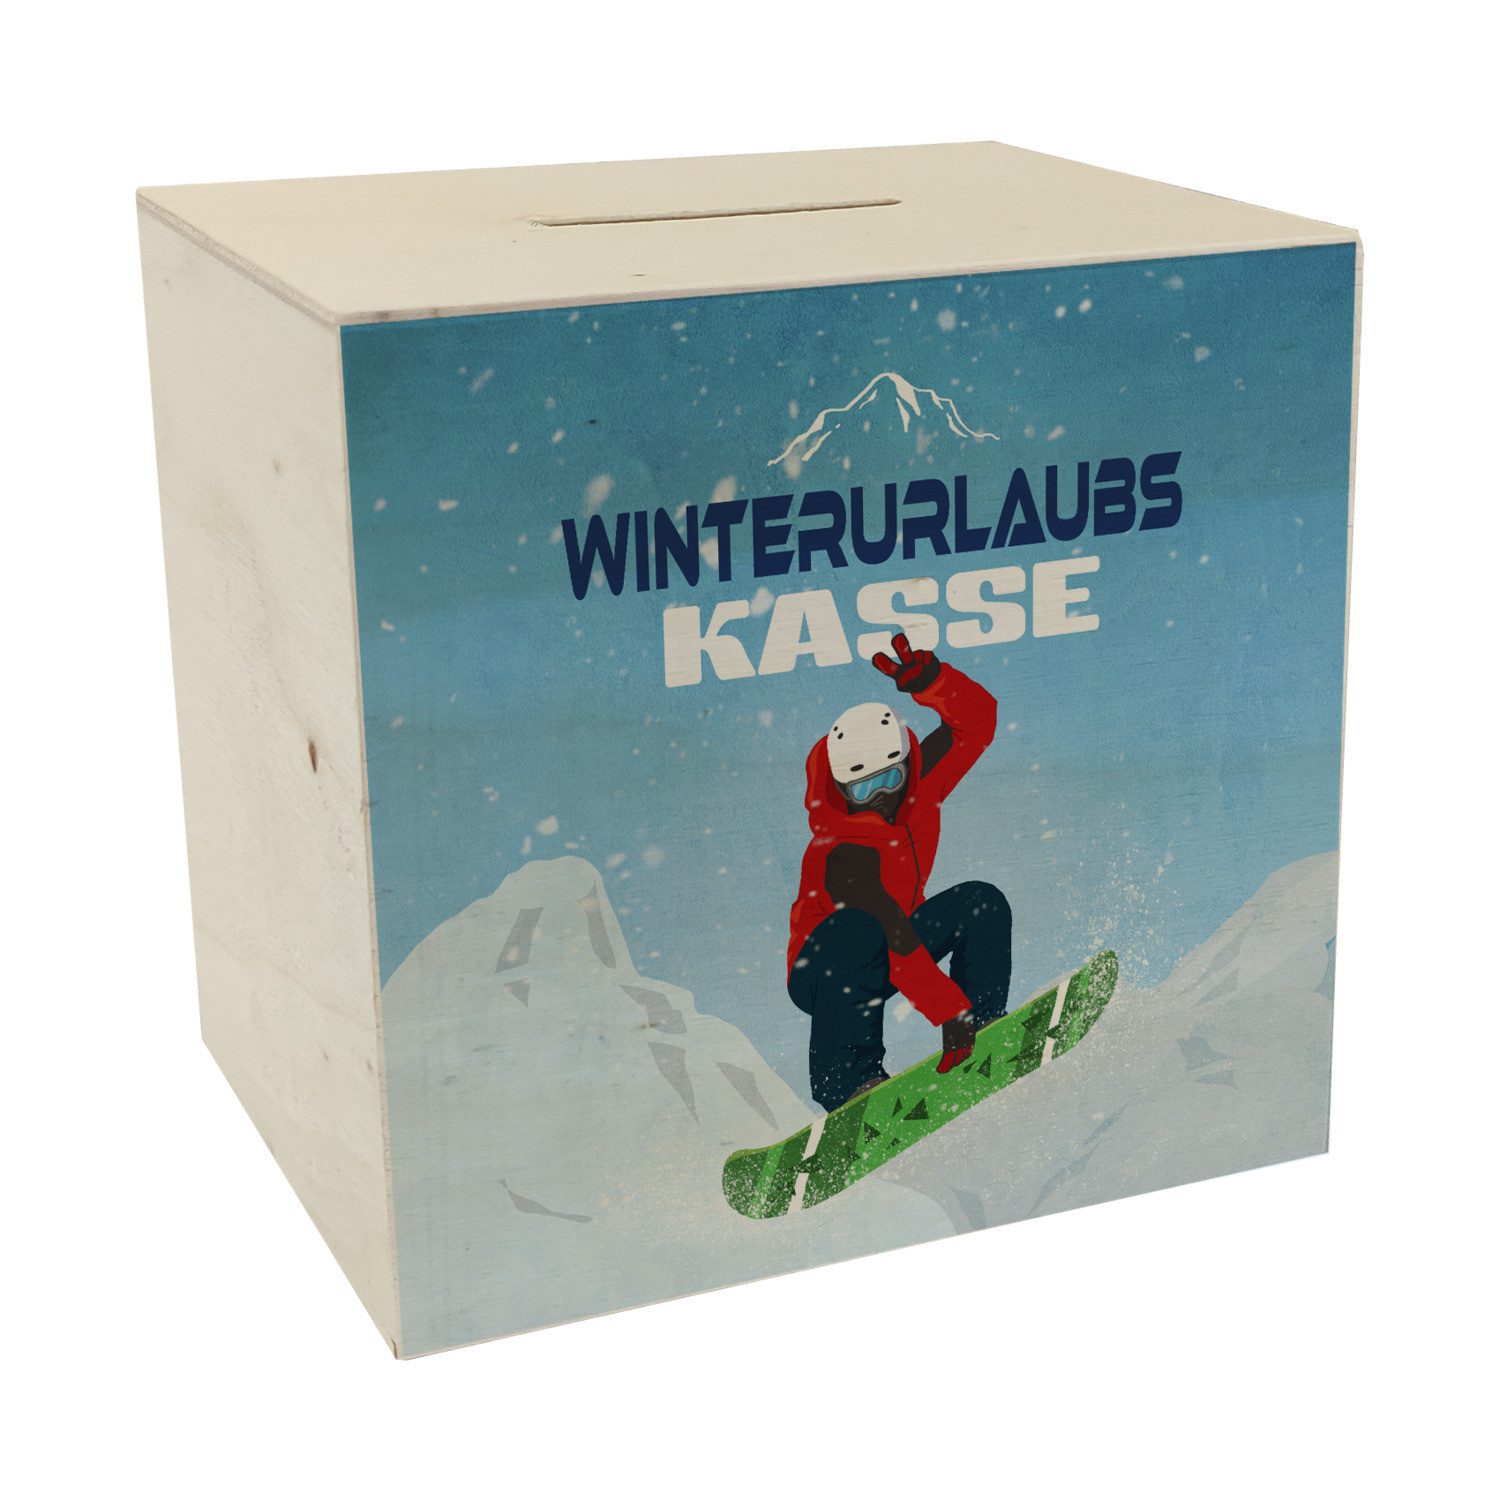 speecheese Spardose Winterurlaubskasse Spardose aus Holz mit coolem Snowboarder